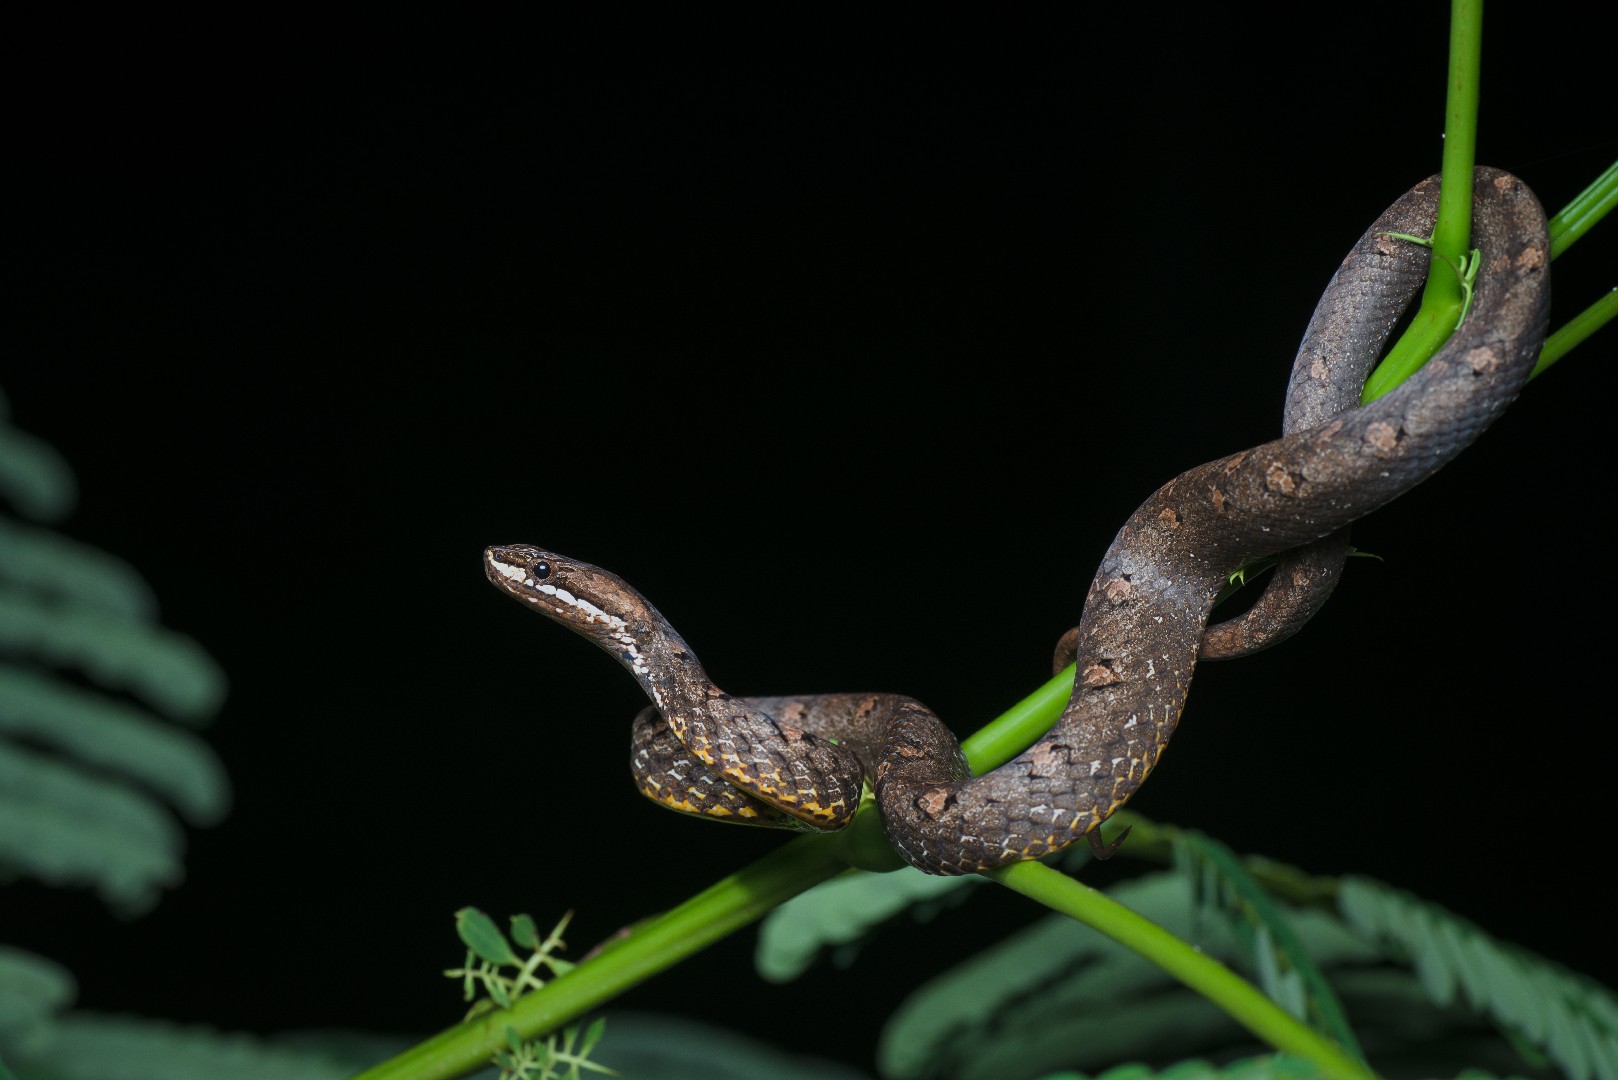 Common mock viper (Psammodynastes pulverulentus)